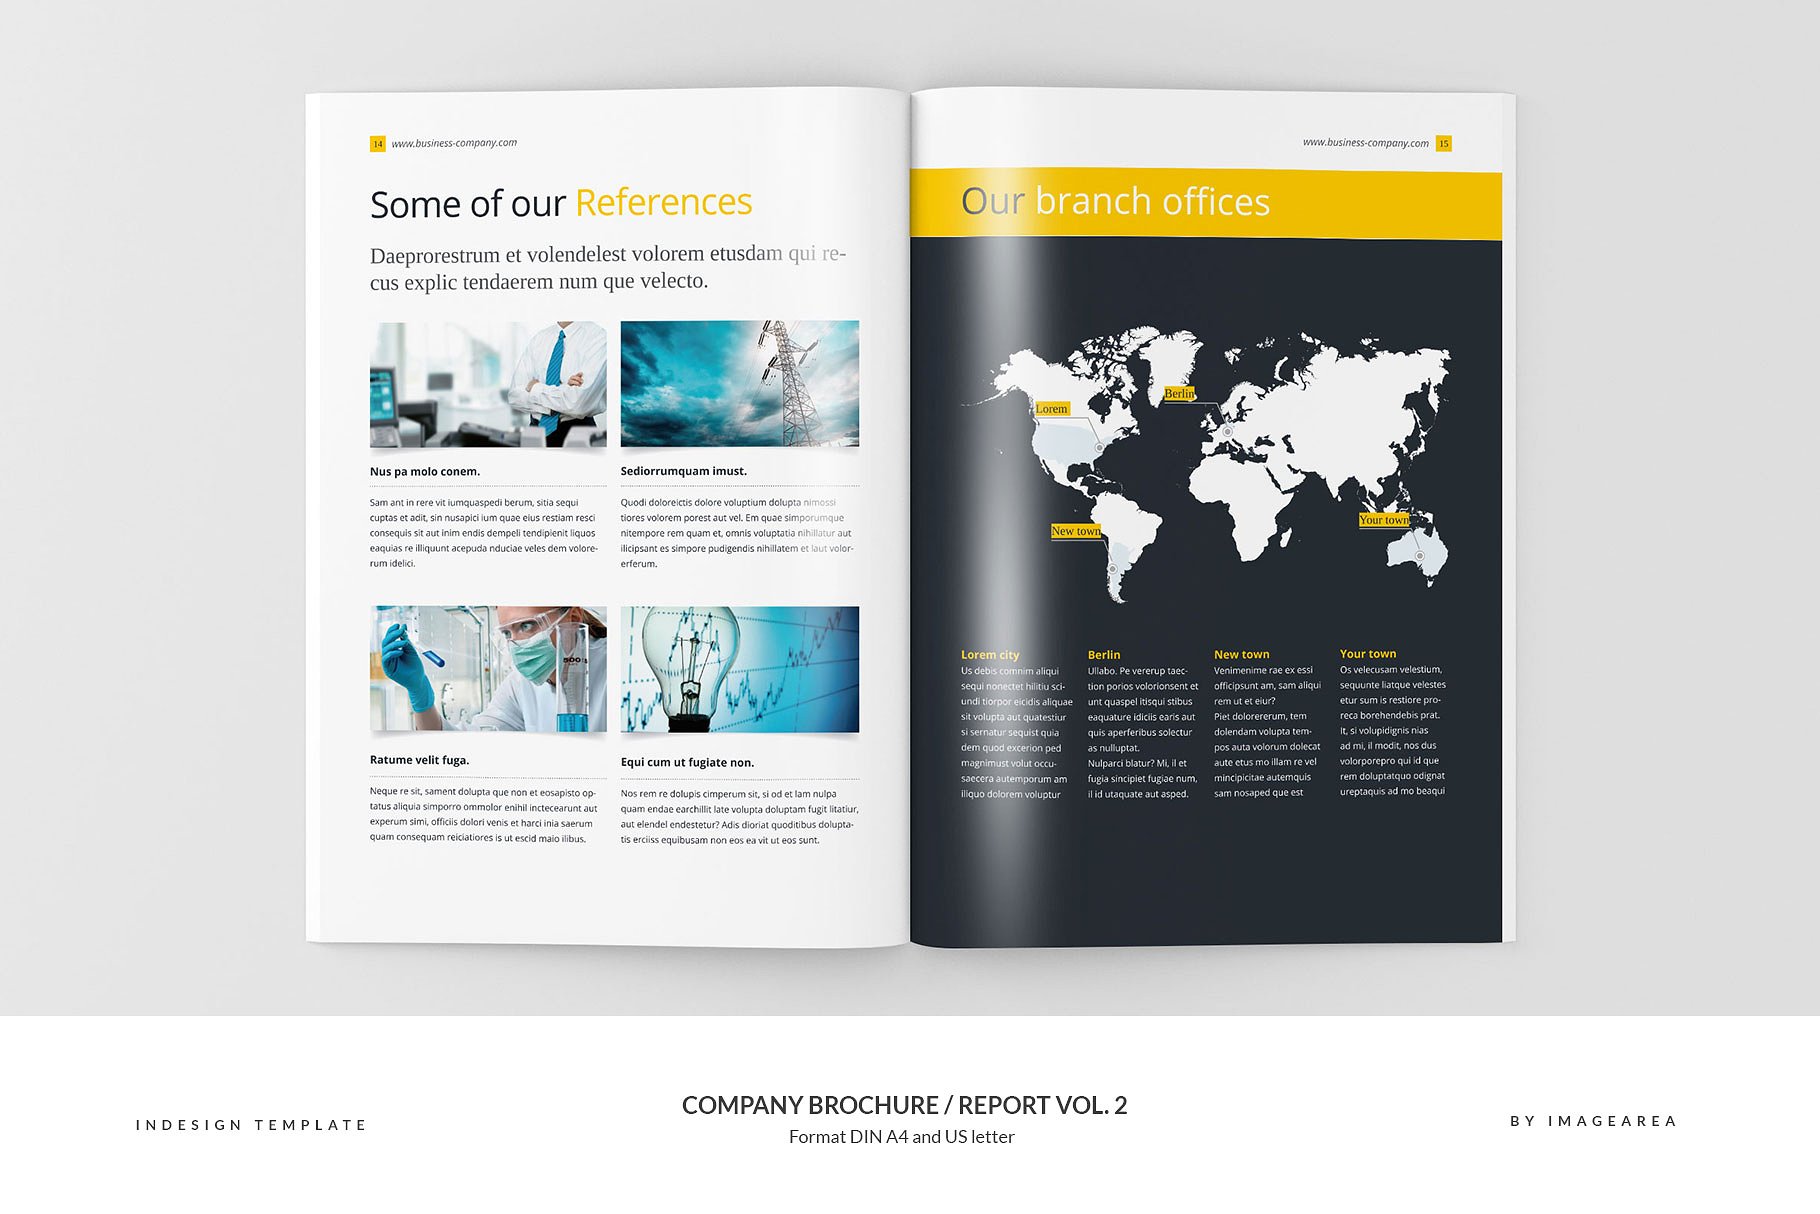 企业品牌宣传画册/企业年报设计模板v2 Company Brochure / Report Vol. 2插图(8)